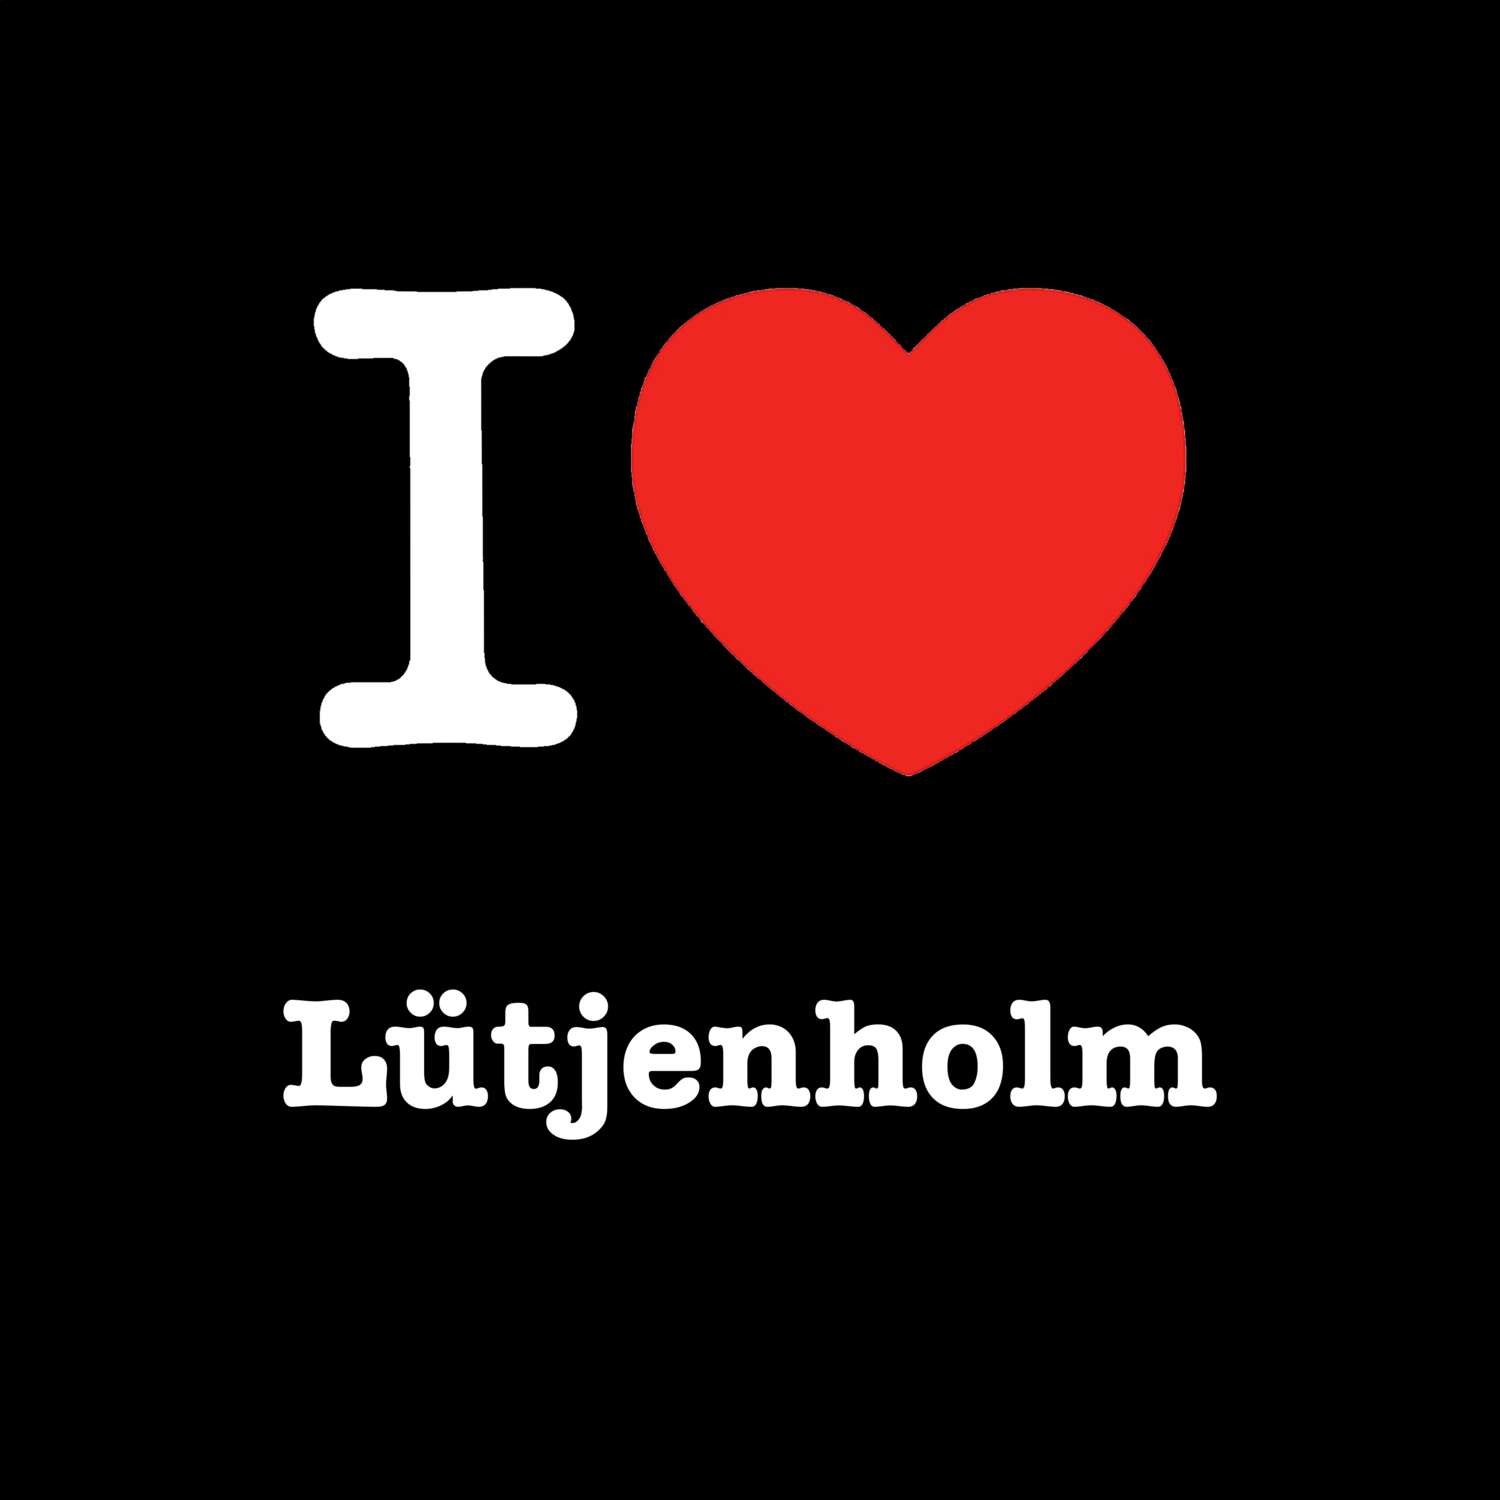 Lütjenholm T-Shirt »I love«